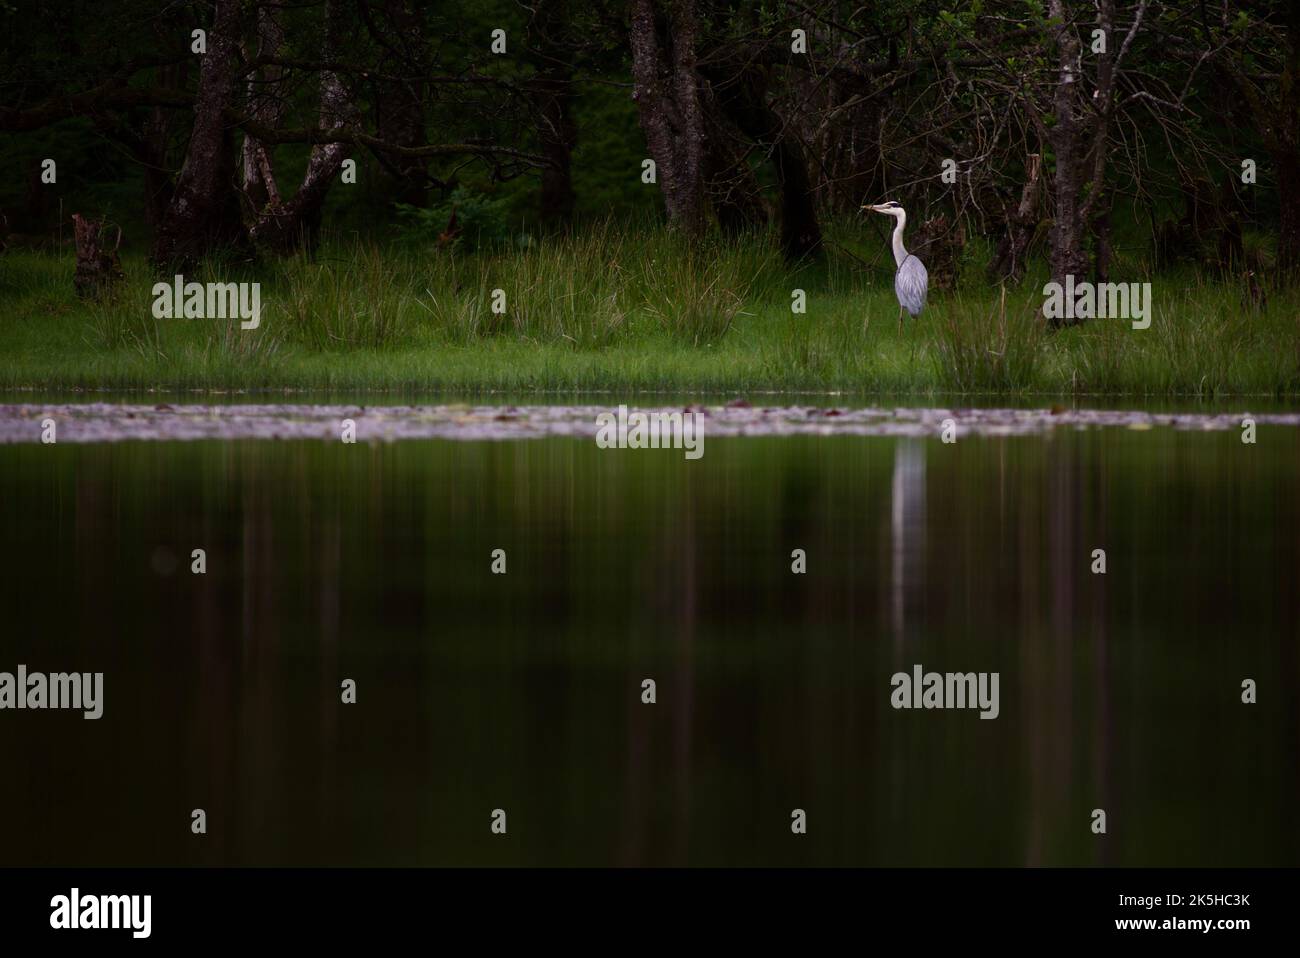 Graureiher stand auf einem grasbewachsenen Ufer neben einem See. Ein Reiher, der im hohen Gras eines Feuchtgebiets fischt, seine Spiegelung im Wasser. Loch Lomond, Großbritannien. Stockfoto